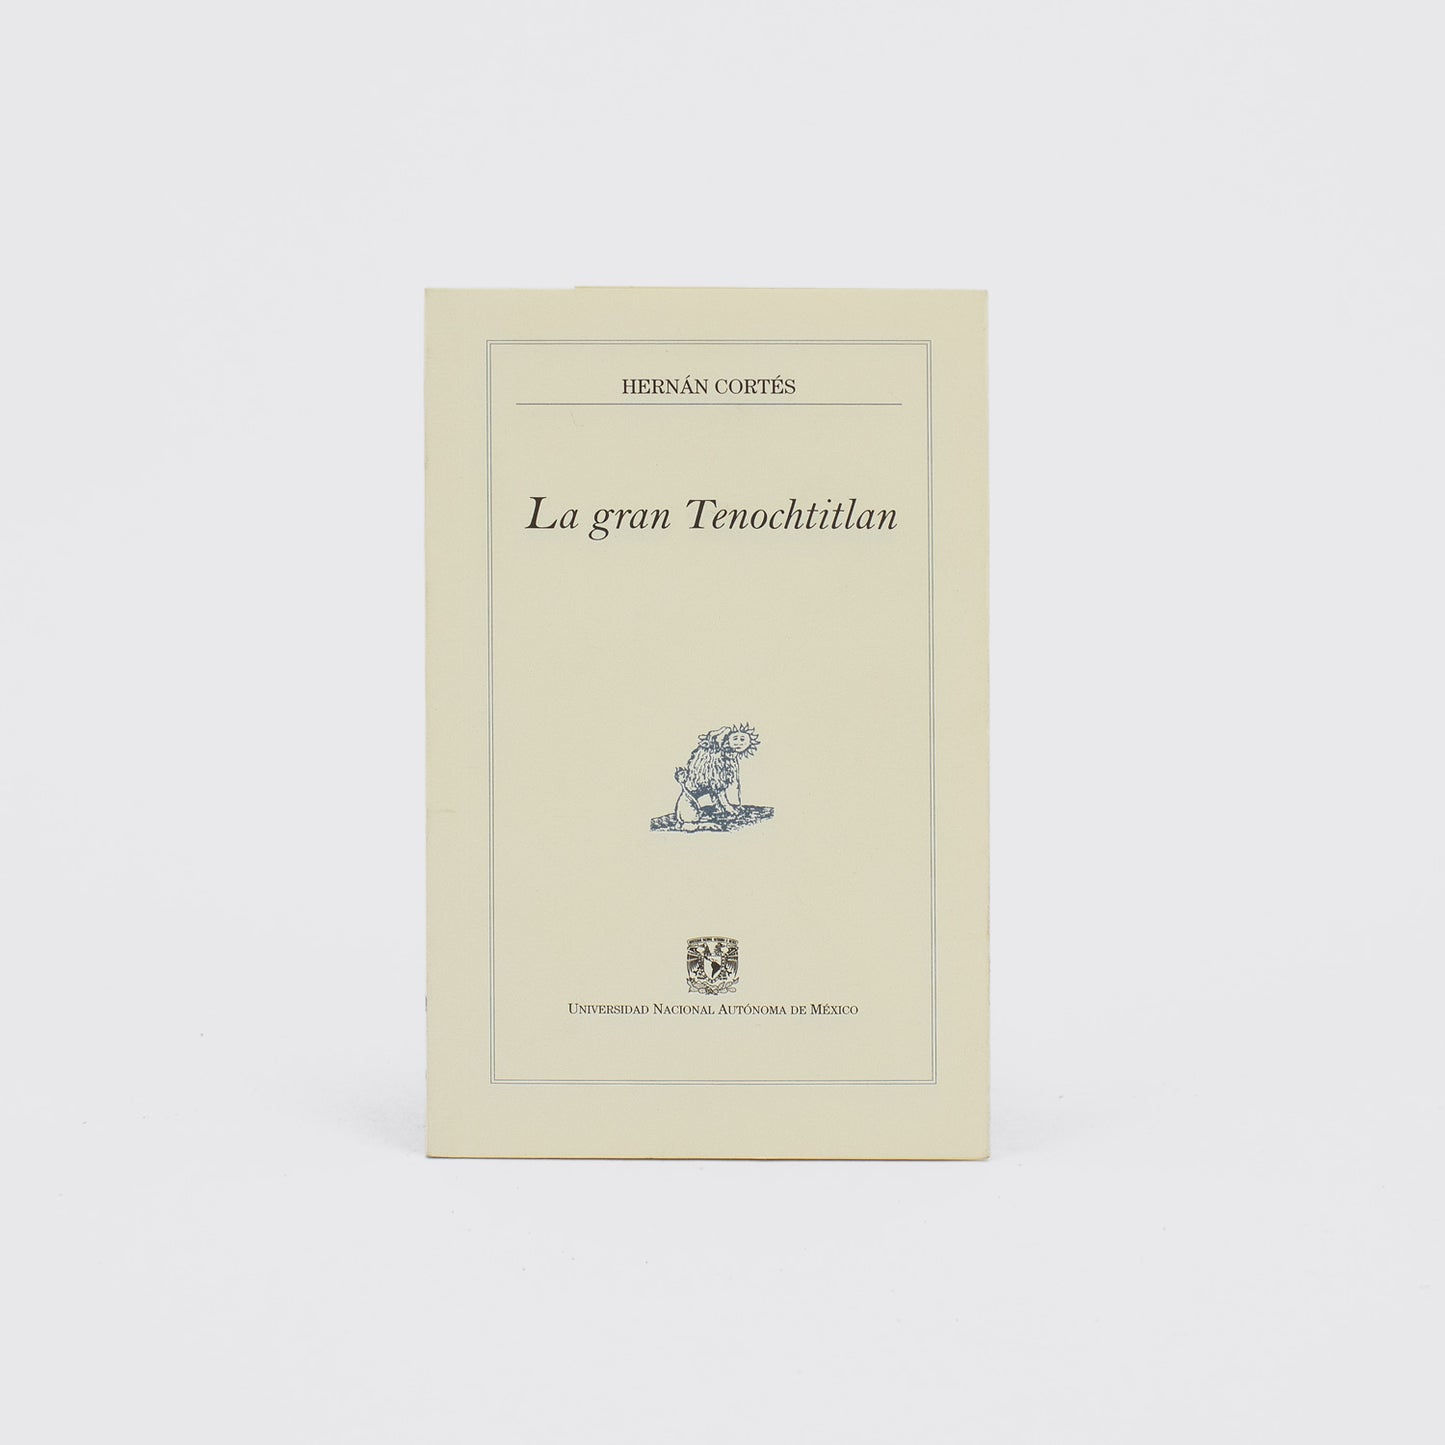 LIBRO / LA GRÁN TENOCHTITLAN. Hernán Cortés